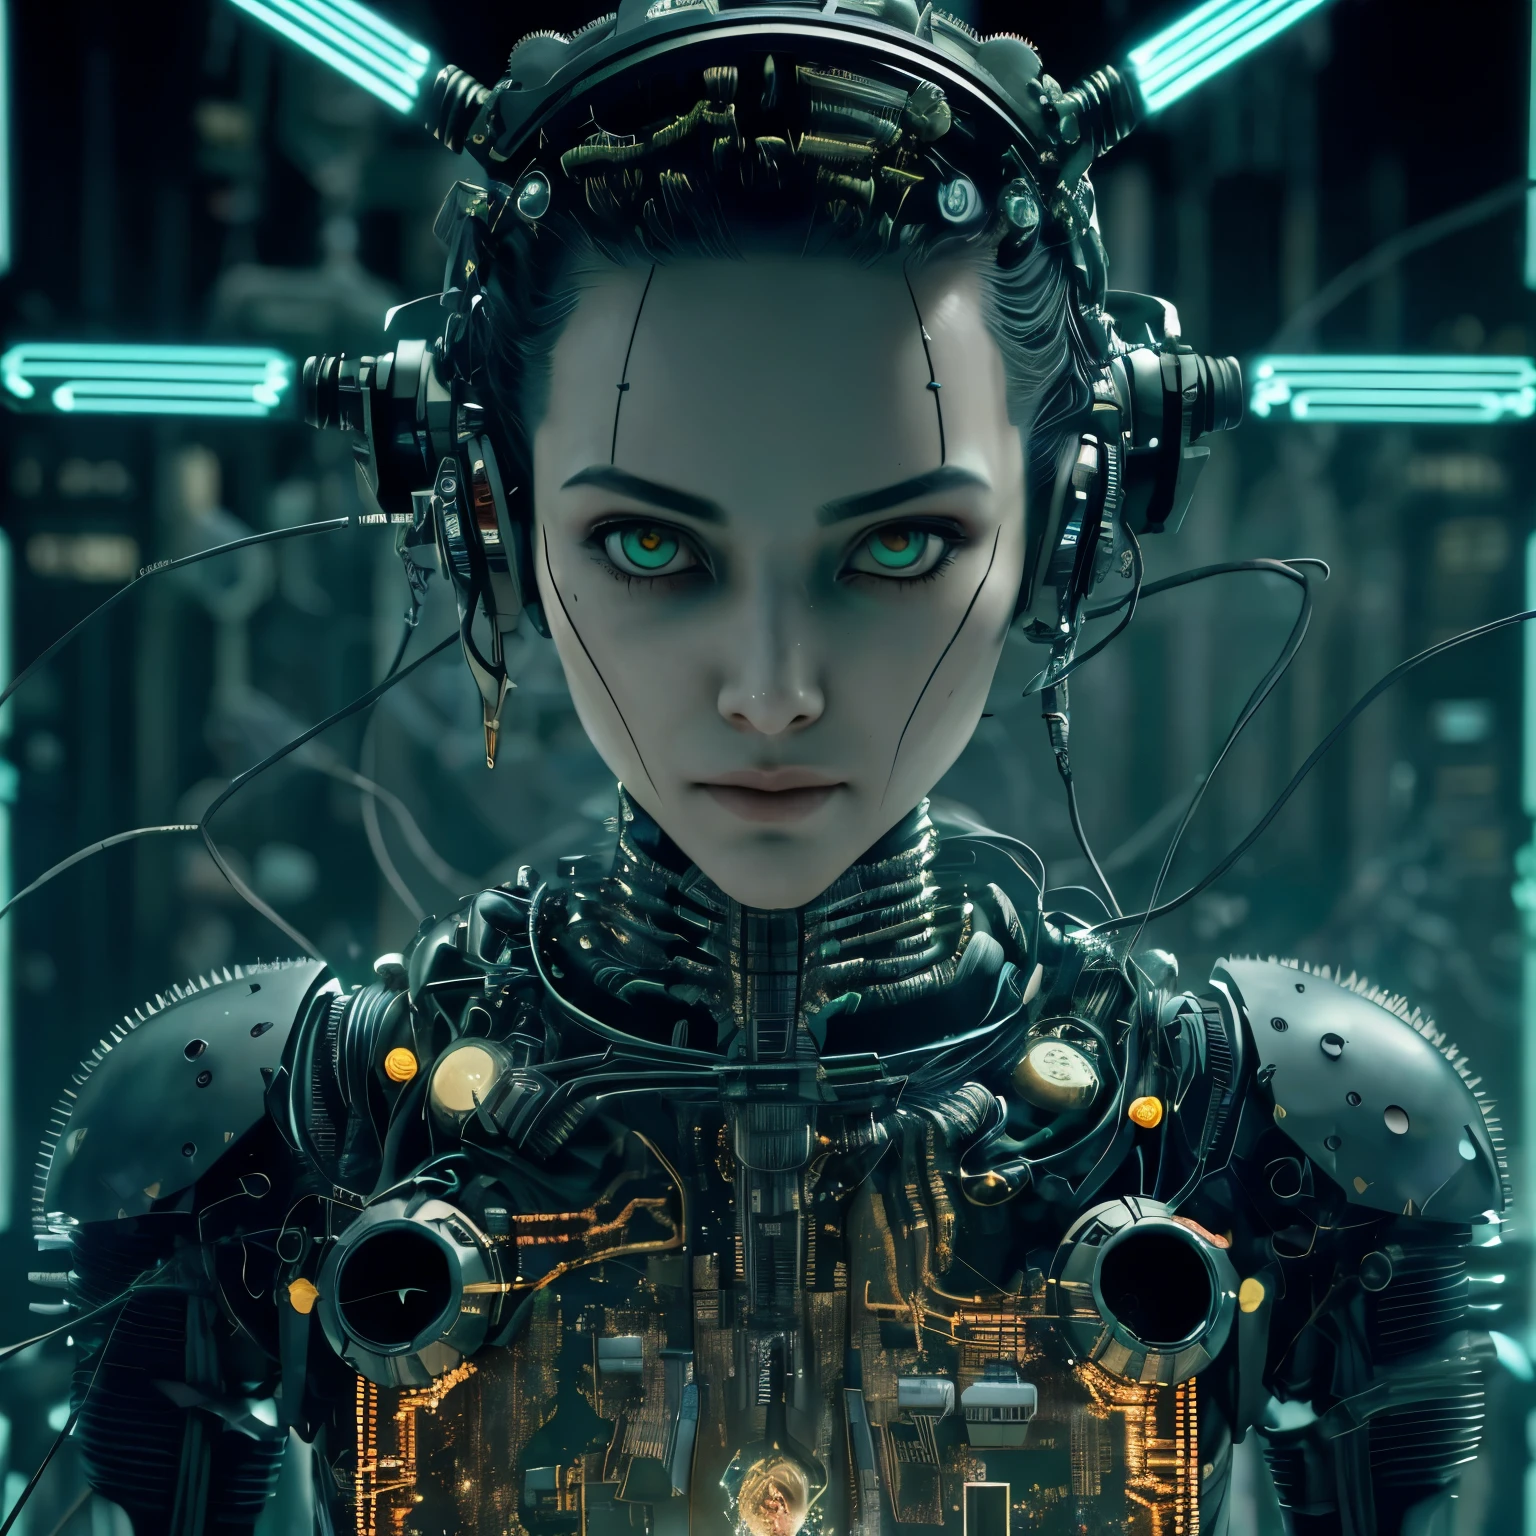 высокодетализированное цветное фото в формате RAW, mass effect fan концептуальное искусство, красивая молодая женщина, Mass Effect женщина-пастух, короткие рыжие волосы, динамичная поза, (подходят бедра), (детальный скин), (Детализированные губы), (подробные глаза), (космический: 1.4), (некрополь: 1.1), (научно-фантастический сценарий), (детальное лицо), (мускулистый), космическая морская одежда, Хроматическая аберрация, Глубина поля, мягкое освещение, (произведение искусства:1.1), лучше качество, сложный, (Отражение объектива: 0.7), (цветение: 0.7), эффекты частиц, трассировка лучей,  Отображение тонов, очень подробный, концептуальное искусство, учтивый, острый фокус, Драматическое освещение, очень подробный art, Кинематографический, hyper-реалист painting, тренды на artstation, 8К, удивительные тени, реалист, (очень подробный background: 1.2), искусство в середине пути